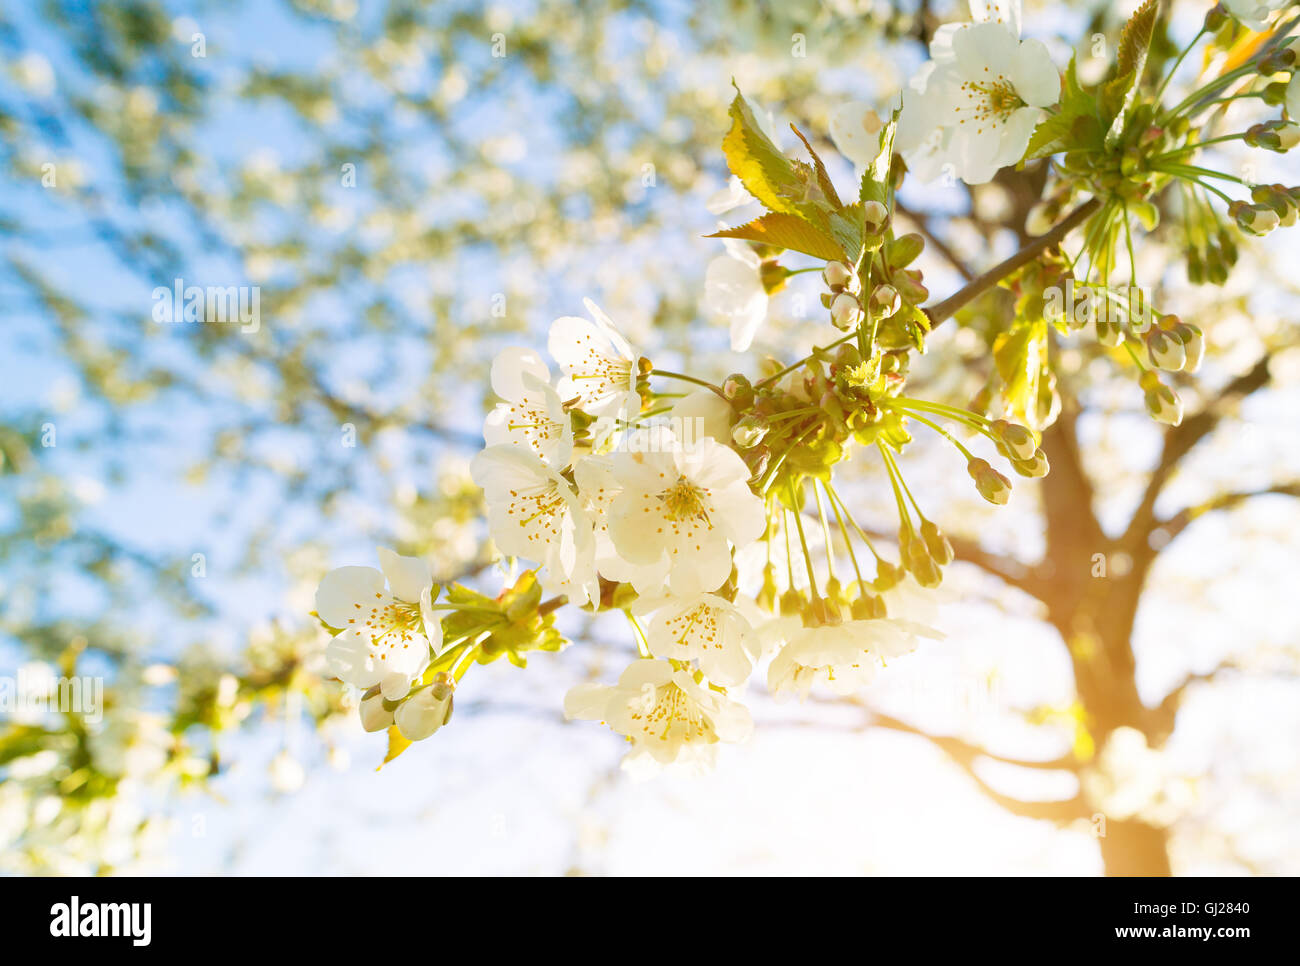 White flower on spring season tree Stock Photo